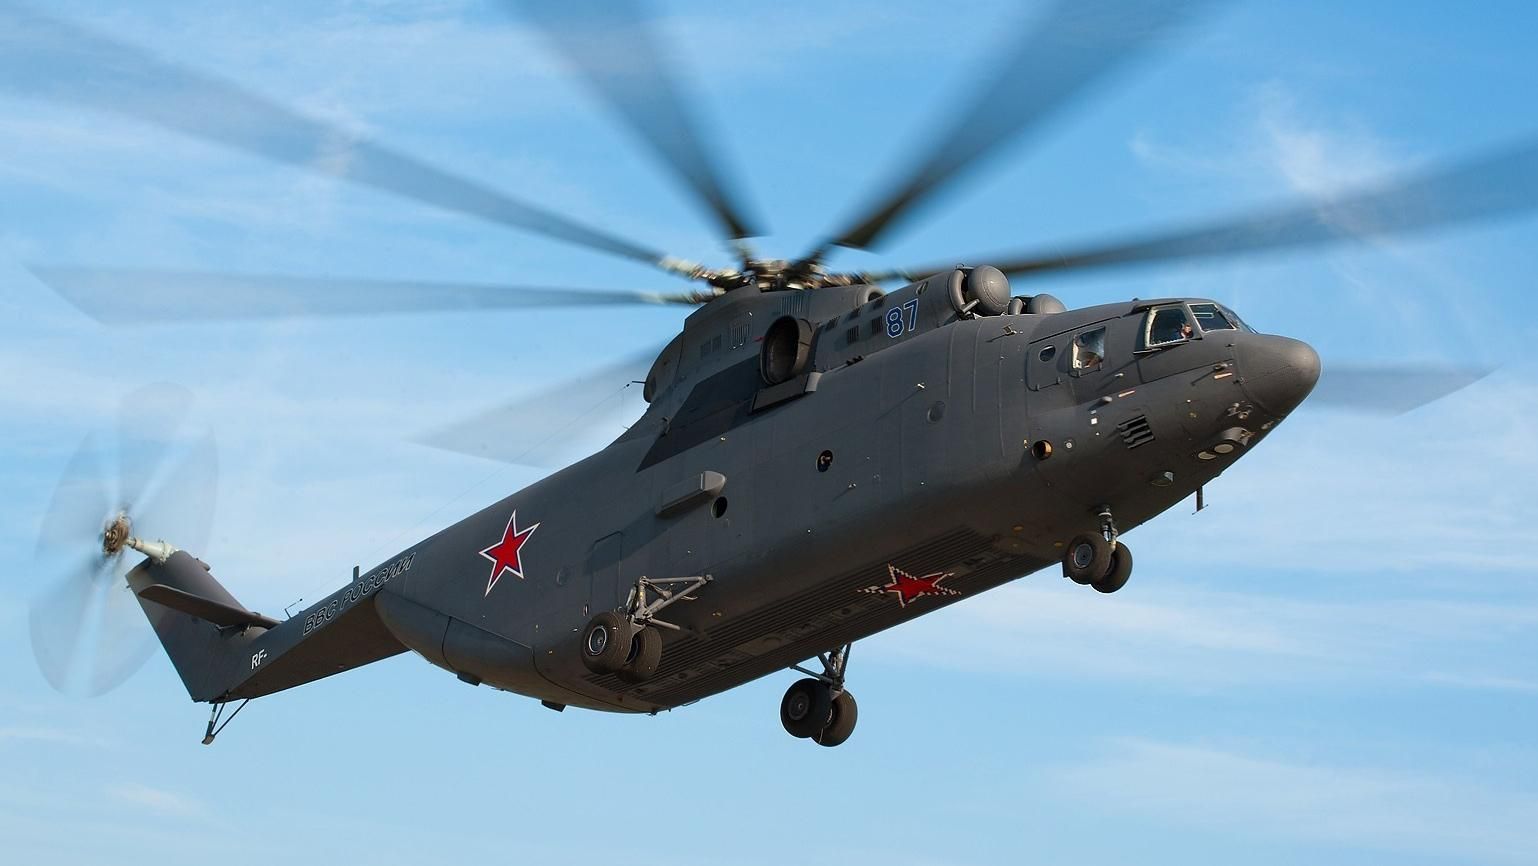 Российский вертолет сбили в Сирии - 3 ноября 2016 - Телеканал новин 24